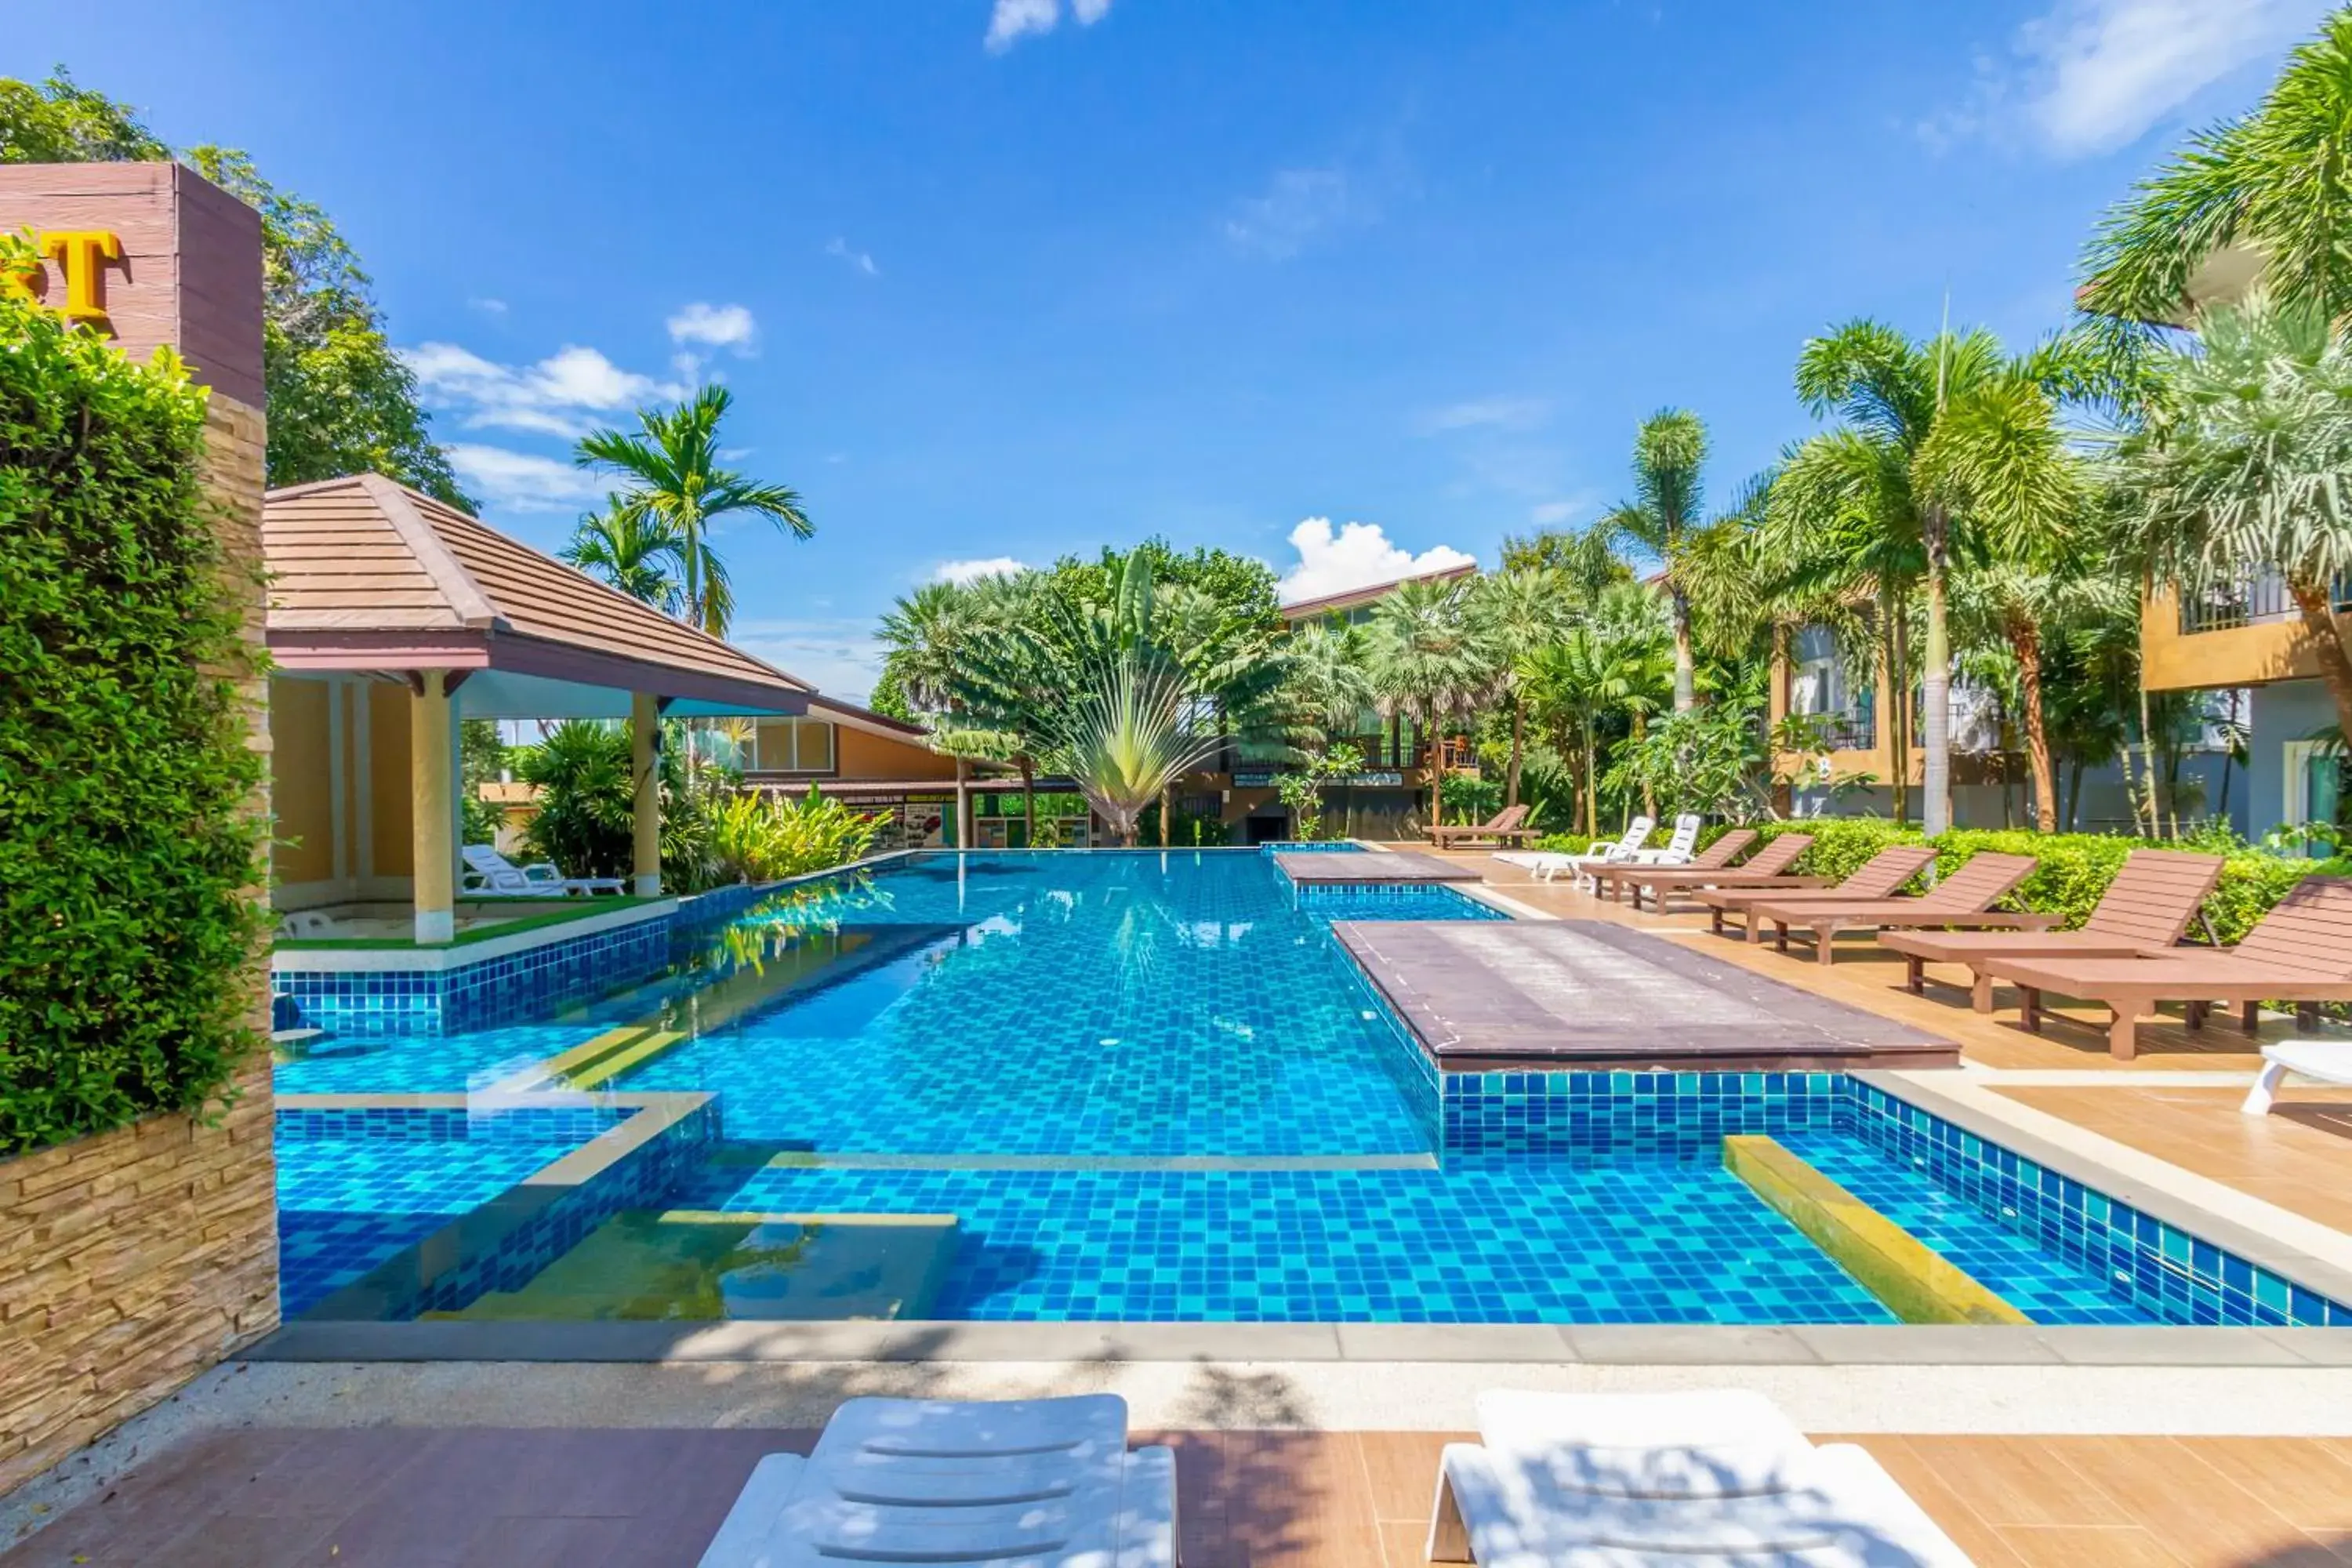 Property building, Swimming Pool in Phutara Lanta Resort (SHA Plus)